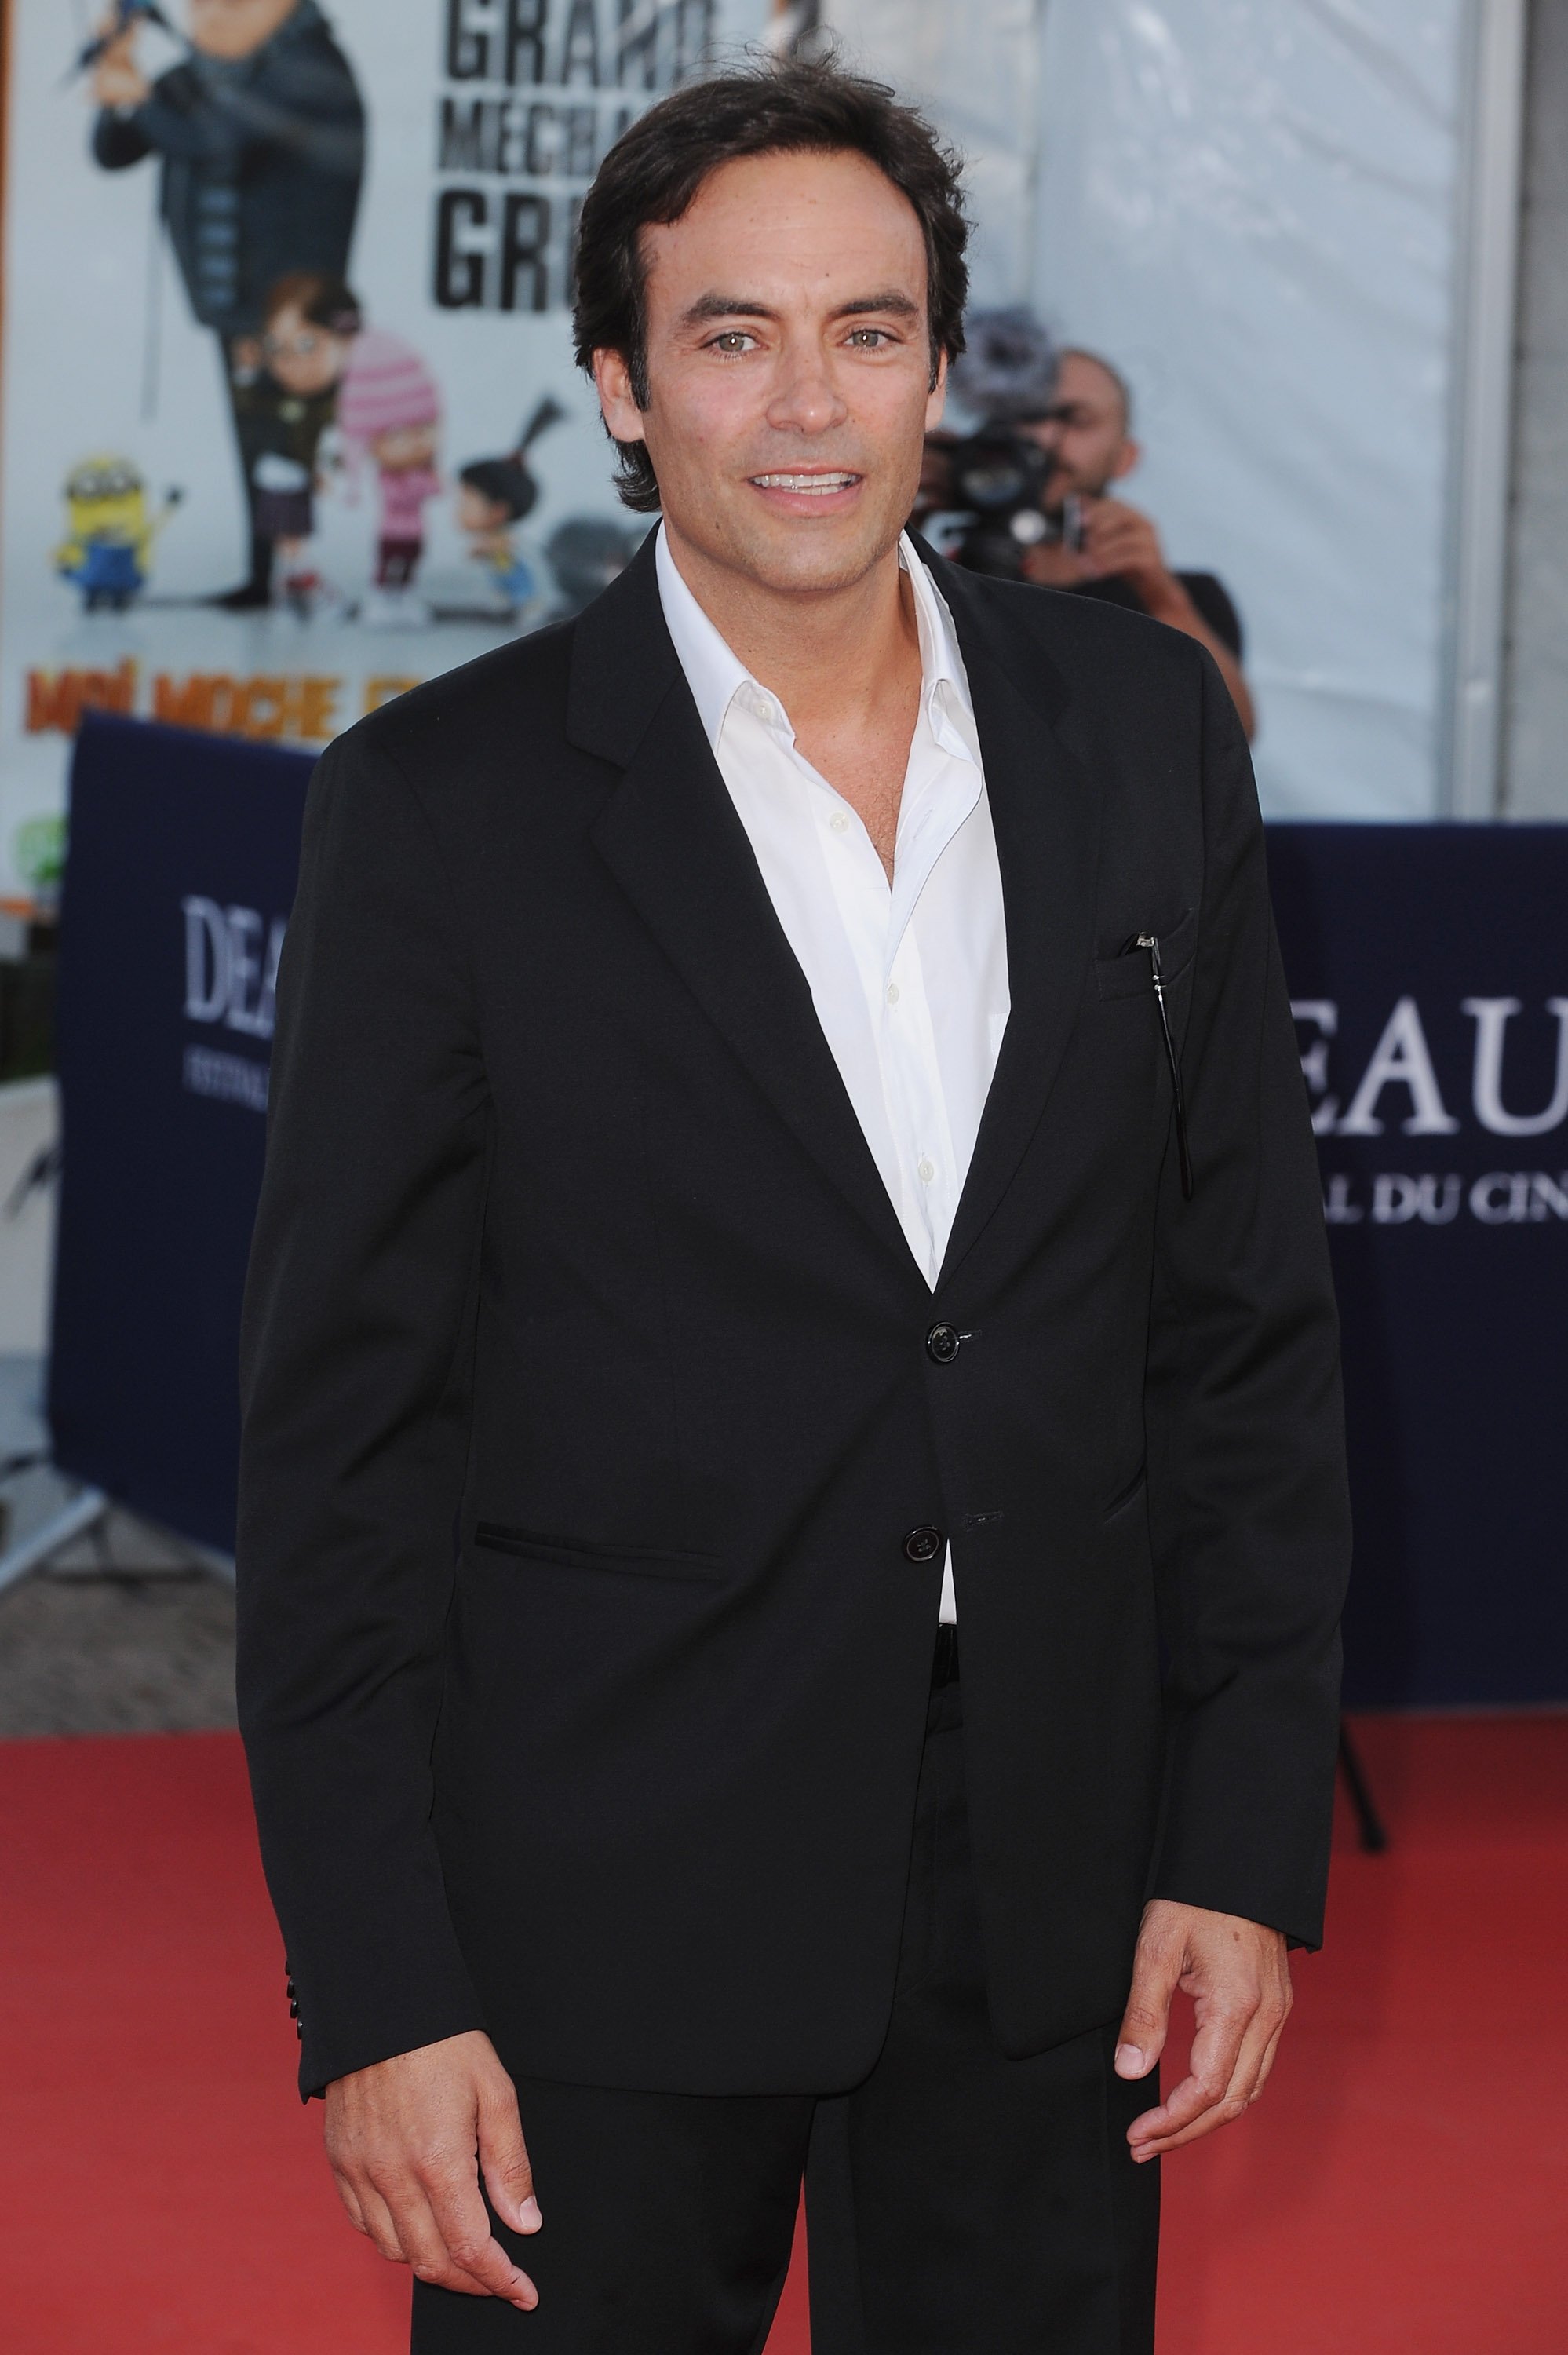 Anthony Delon assiste à la première du film "Fair Game" lors du 36ème Festival du Cinéma Américain de Deauville le 9 septembre 2010 à Deauville, France. | Photo : Getty Images